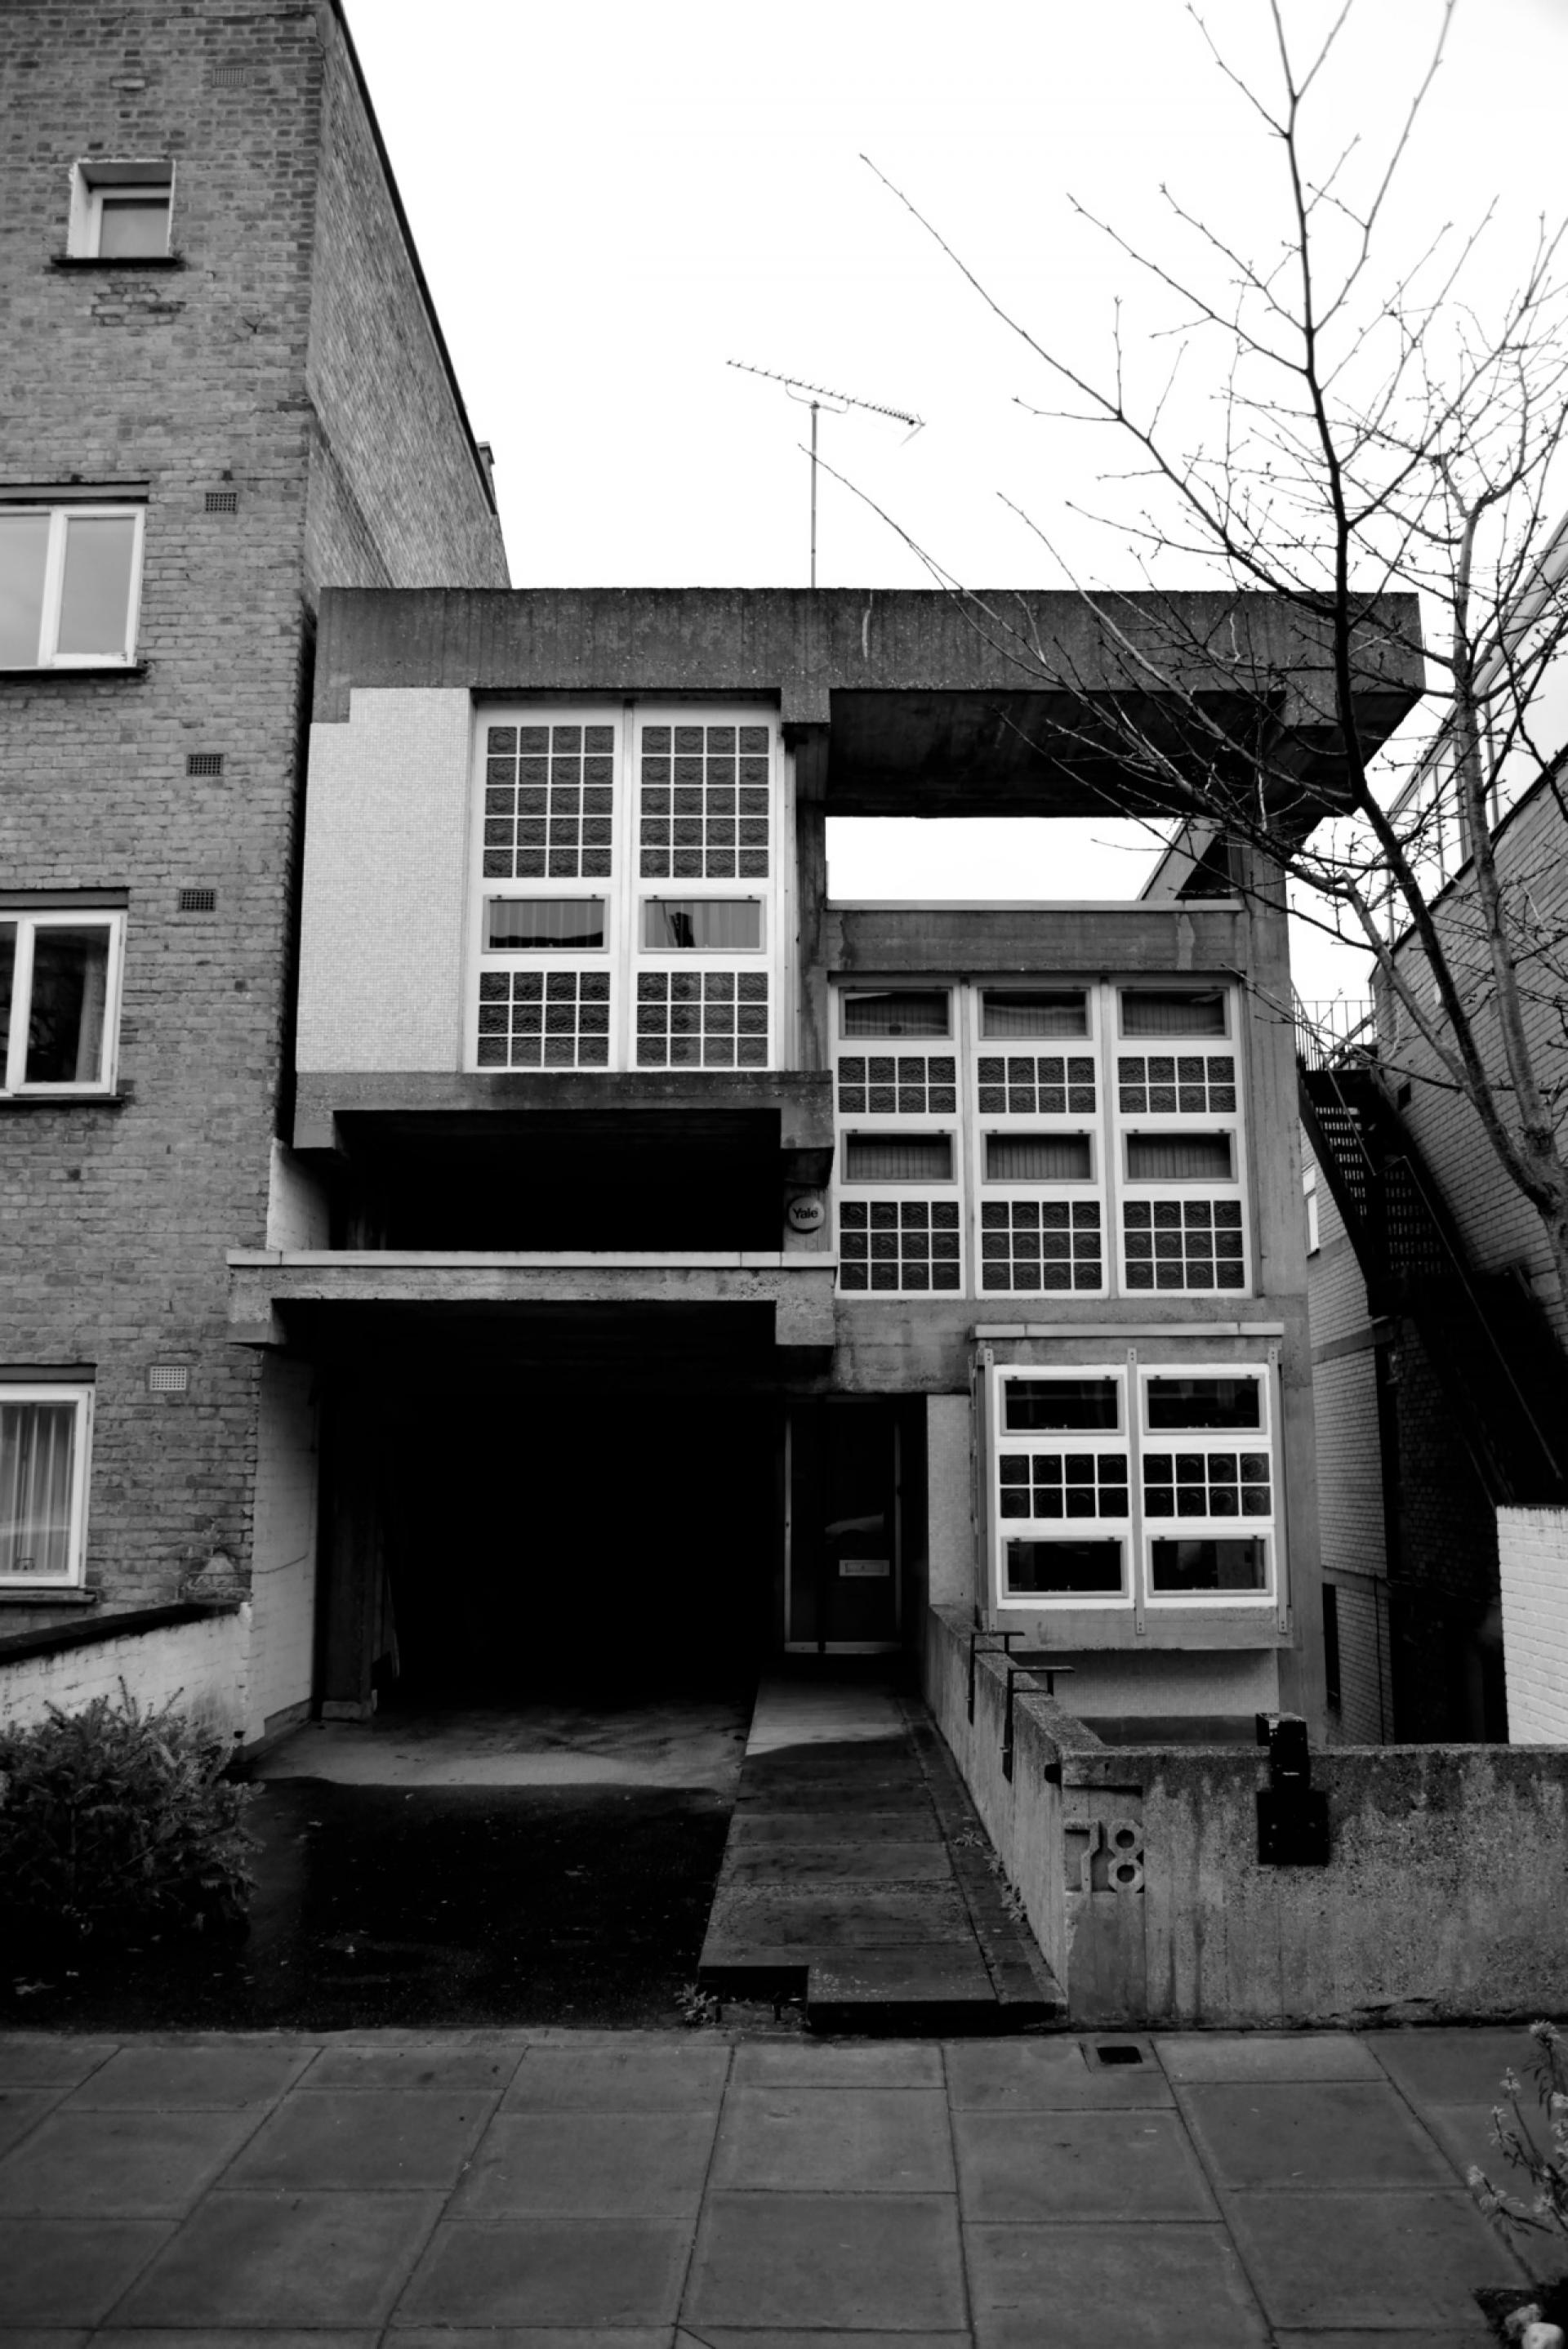 Housden House by Brian Housden (1963).